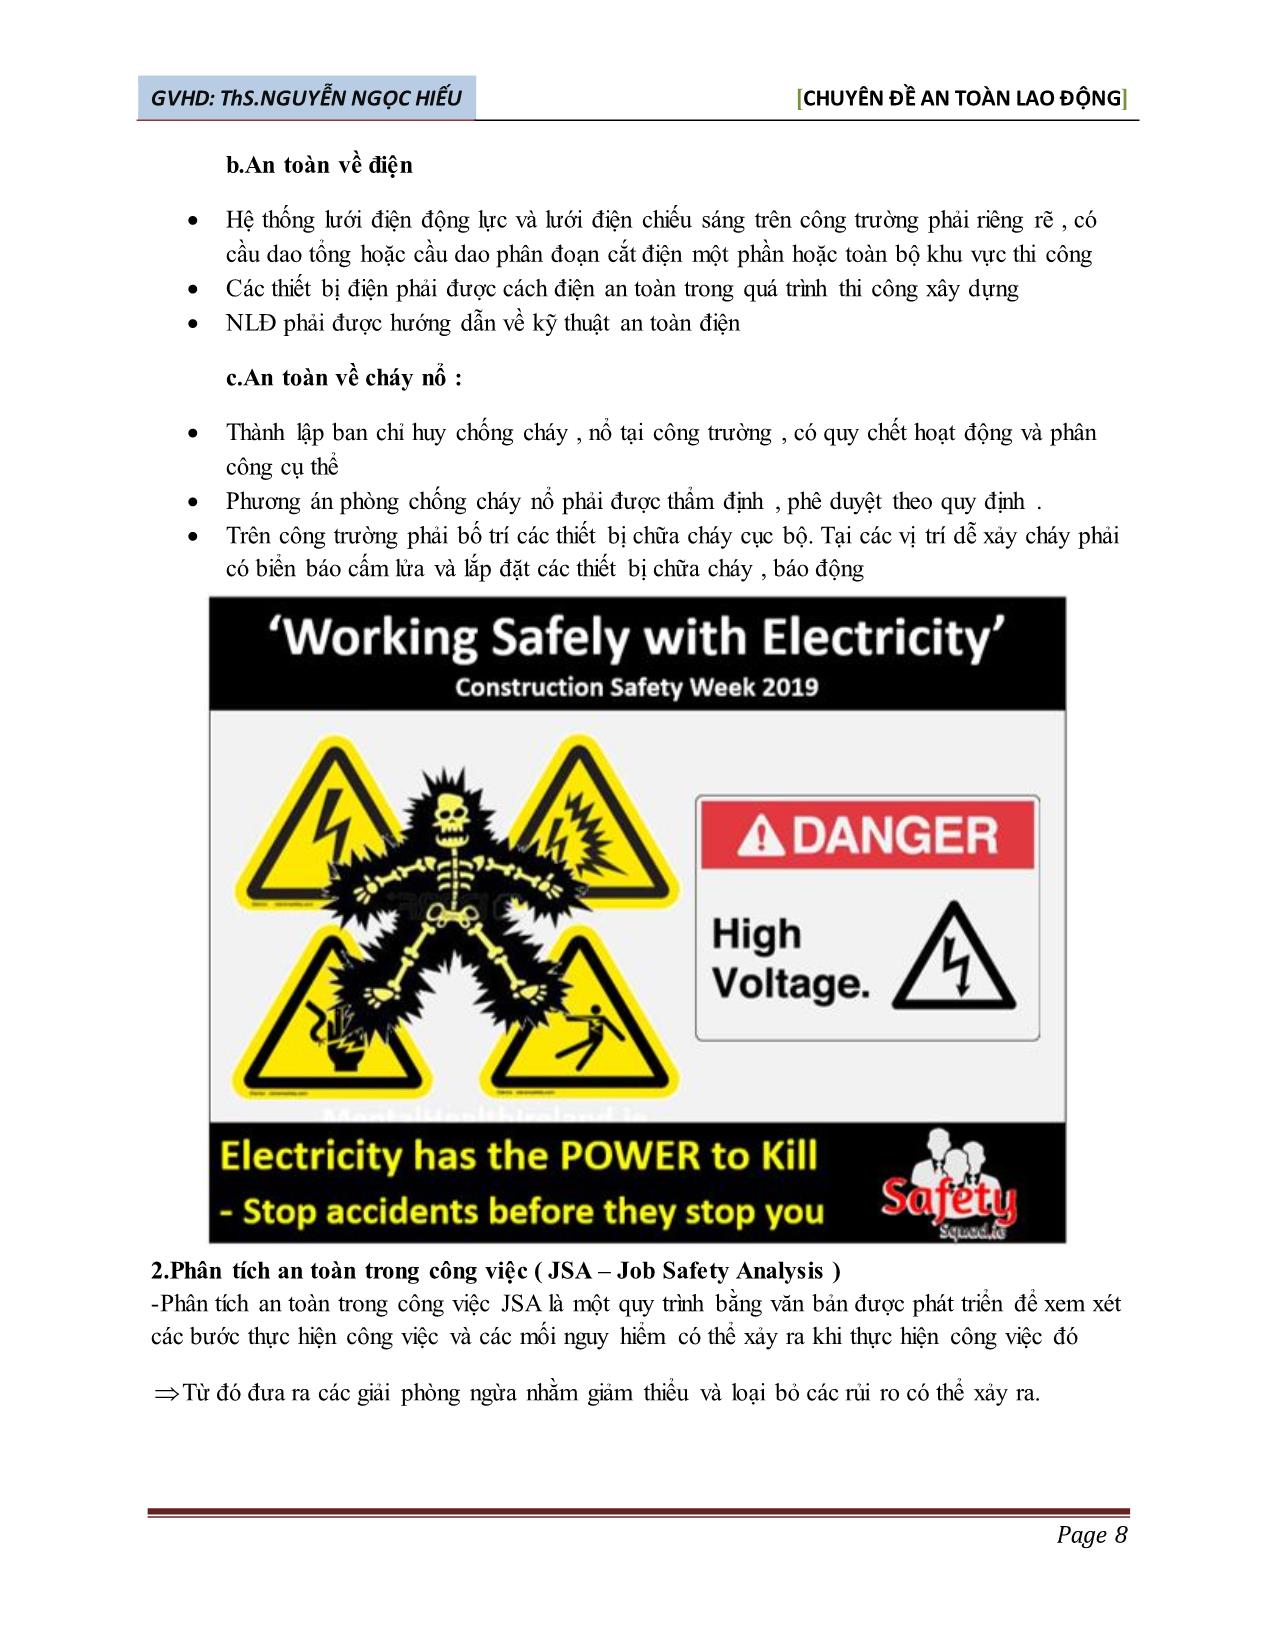 Bài thuyết trình môn Chuyên đề an toàn lao động - Đề tài: Phân tích rủi ro & an toàn lao động khi thi công tầng hầm - Nguyễn Ngọc Hiếu trang 8